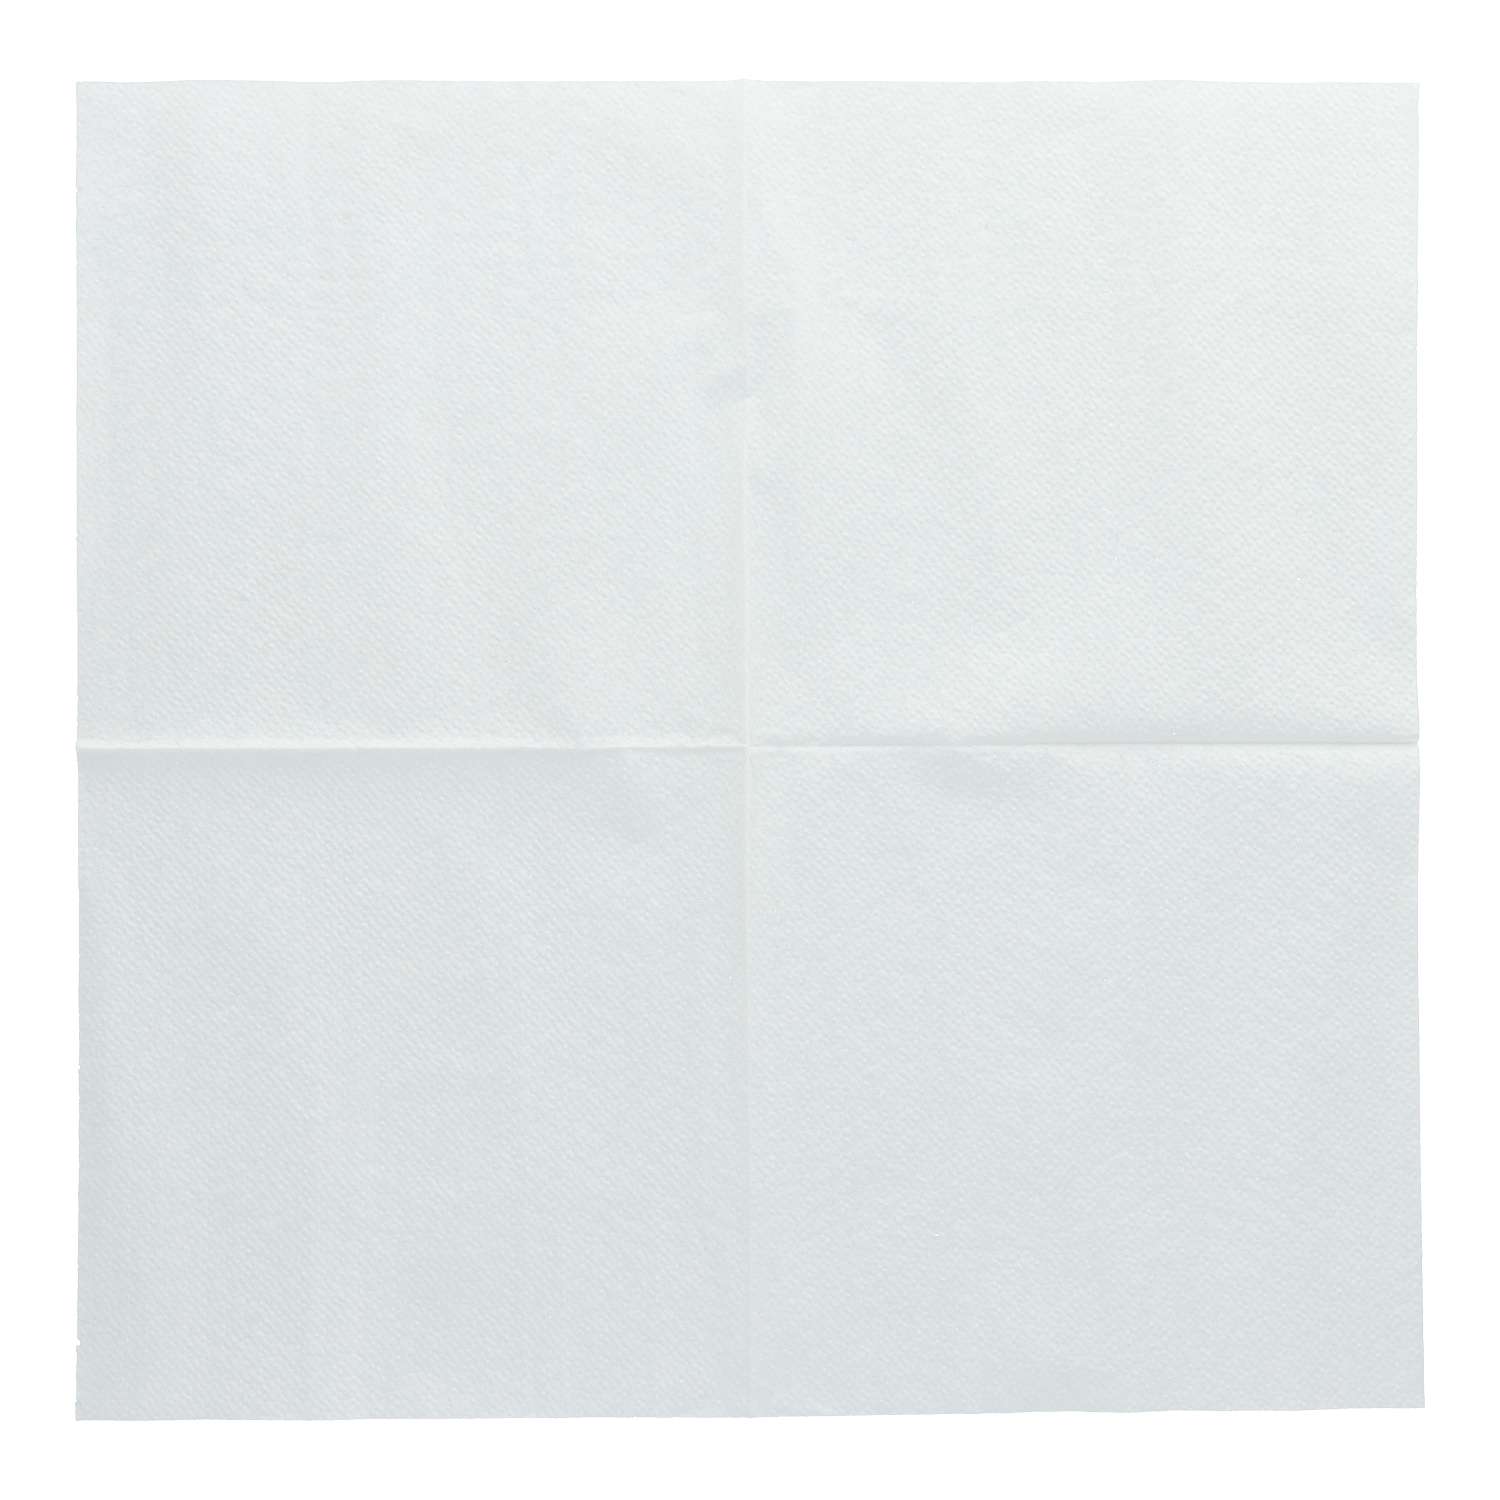 Tissue-Servietten weiß 1/4 Falz 100Stk